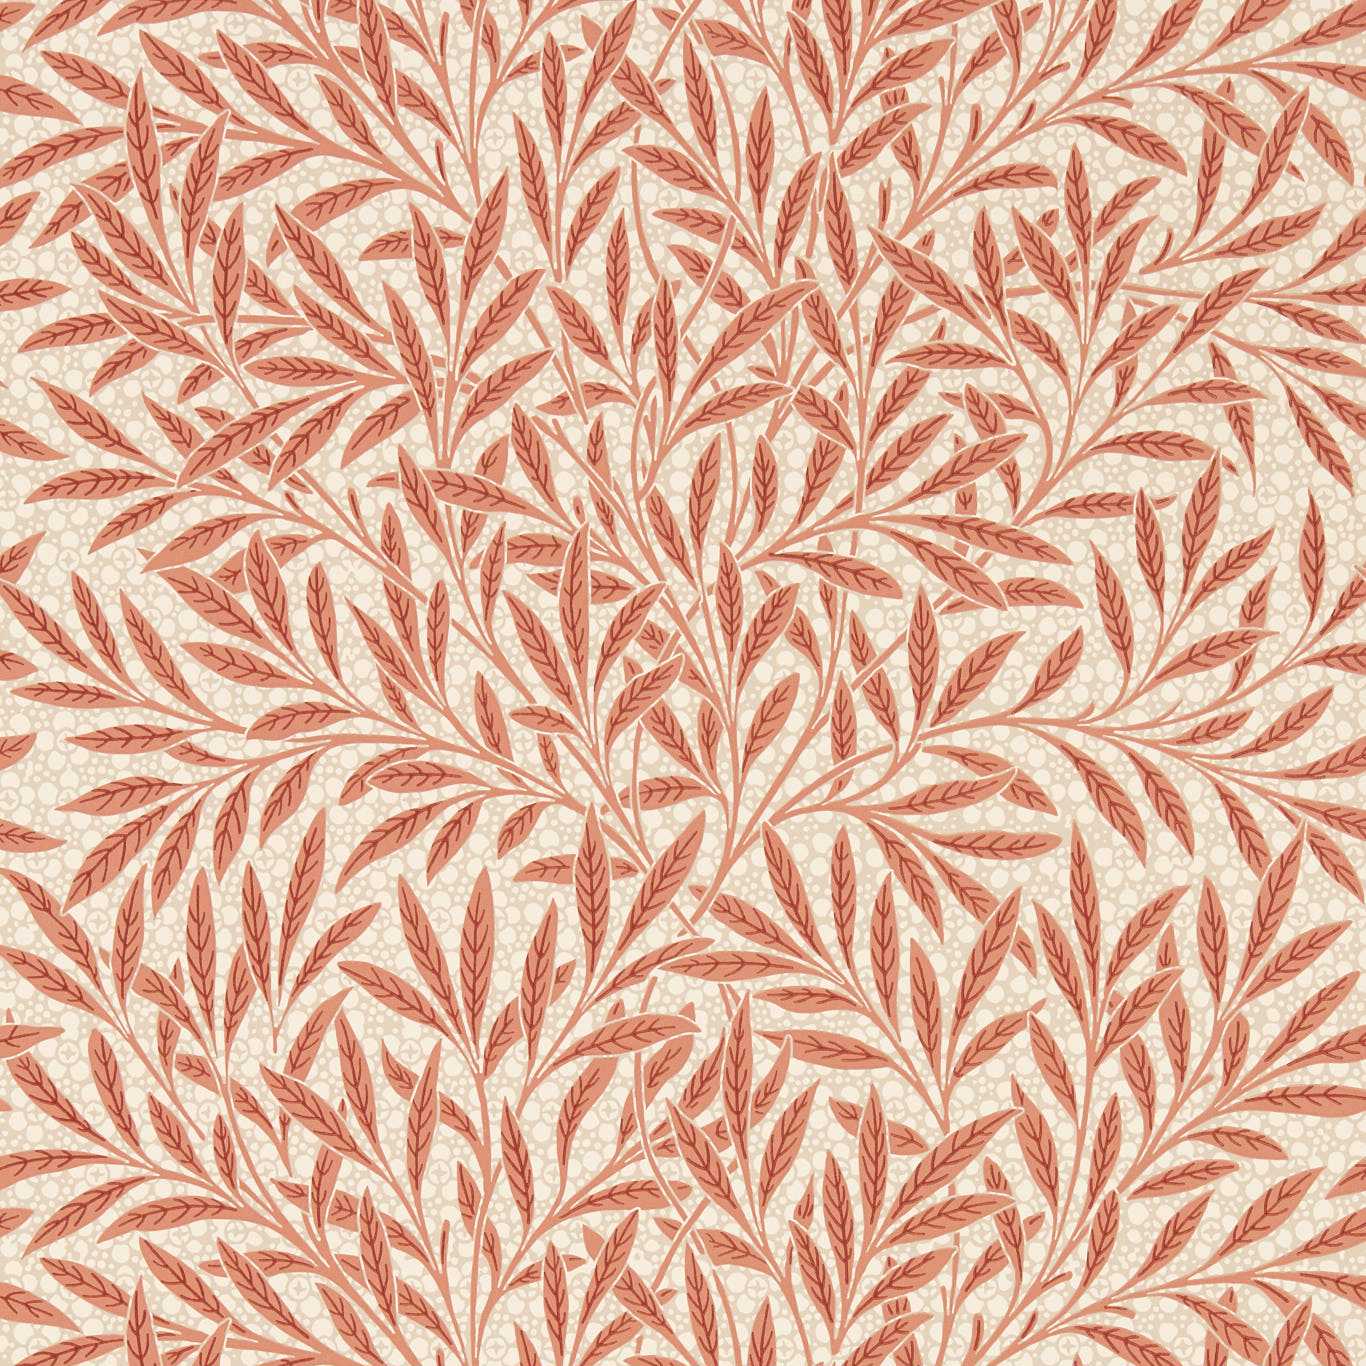 Emery’s Willow Wallpaper - Chrysanthemum Pink - MEWW217186 - Morris & Co - Emmery Walkers - Morris Wallpaper